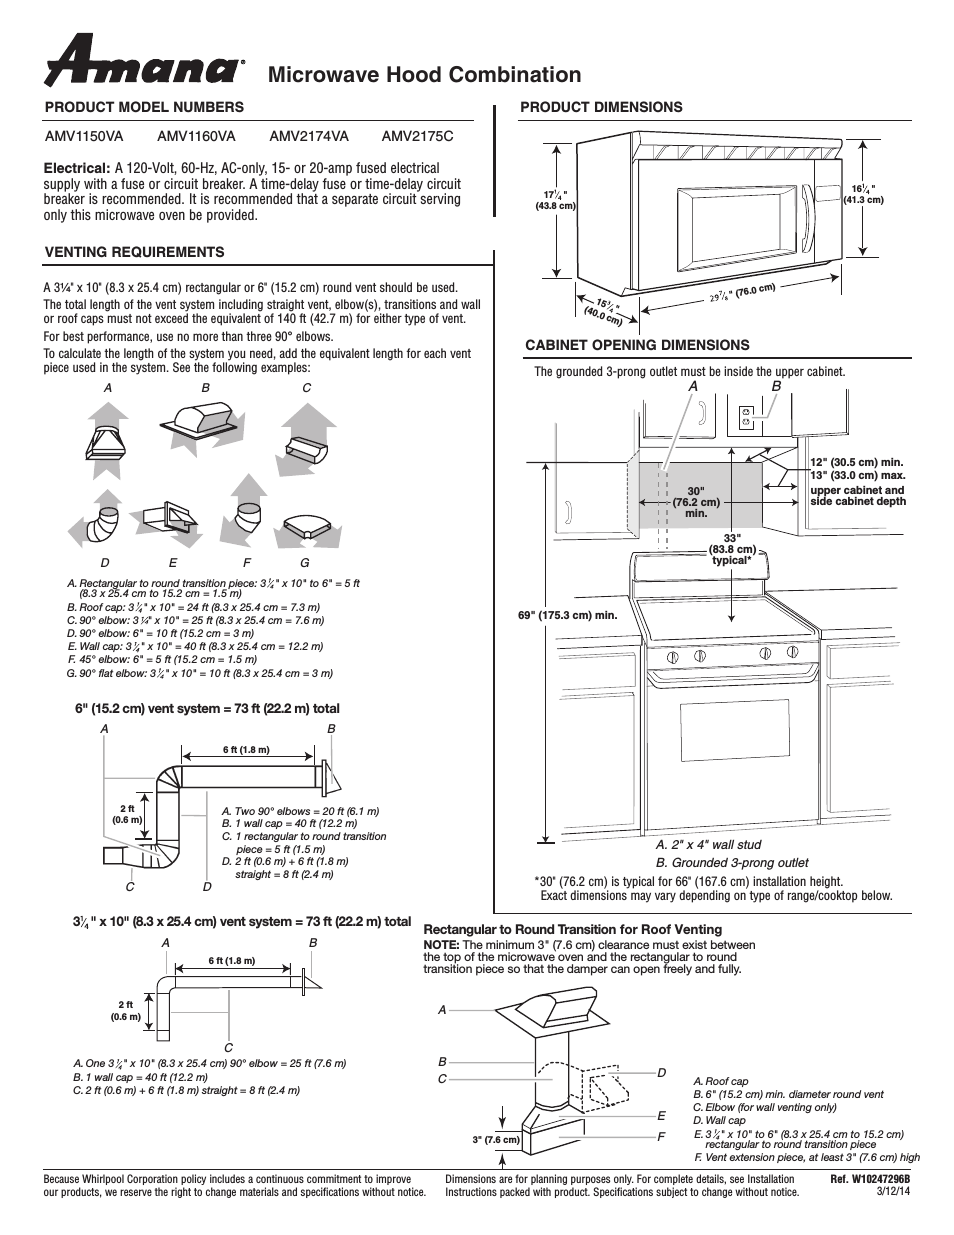 AMV2175CB Dimension Guide